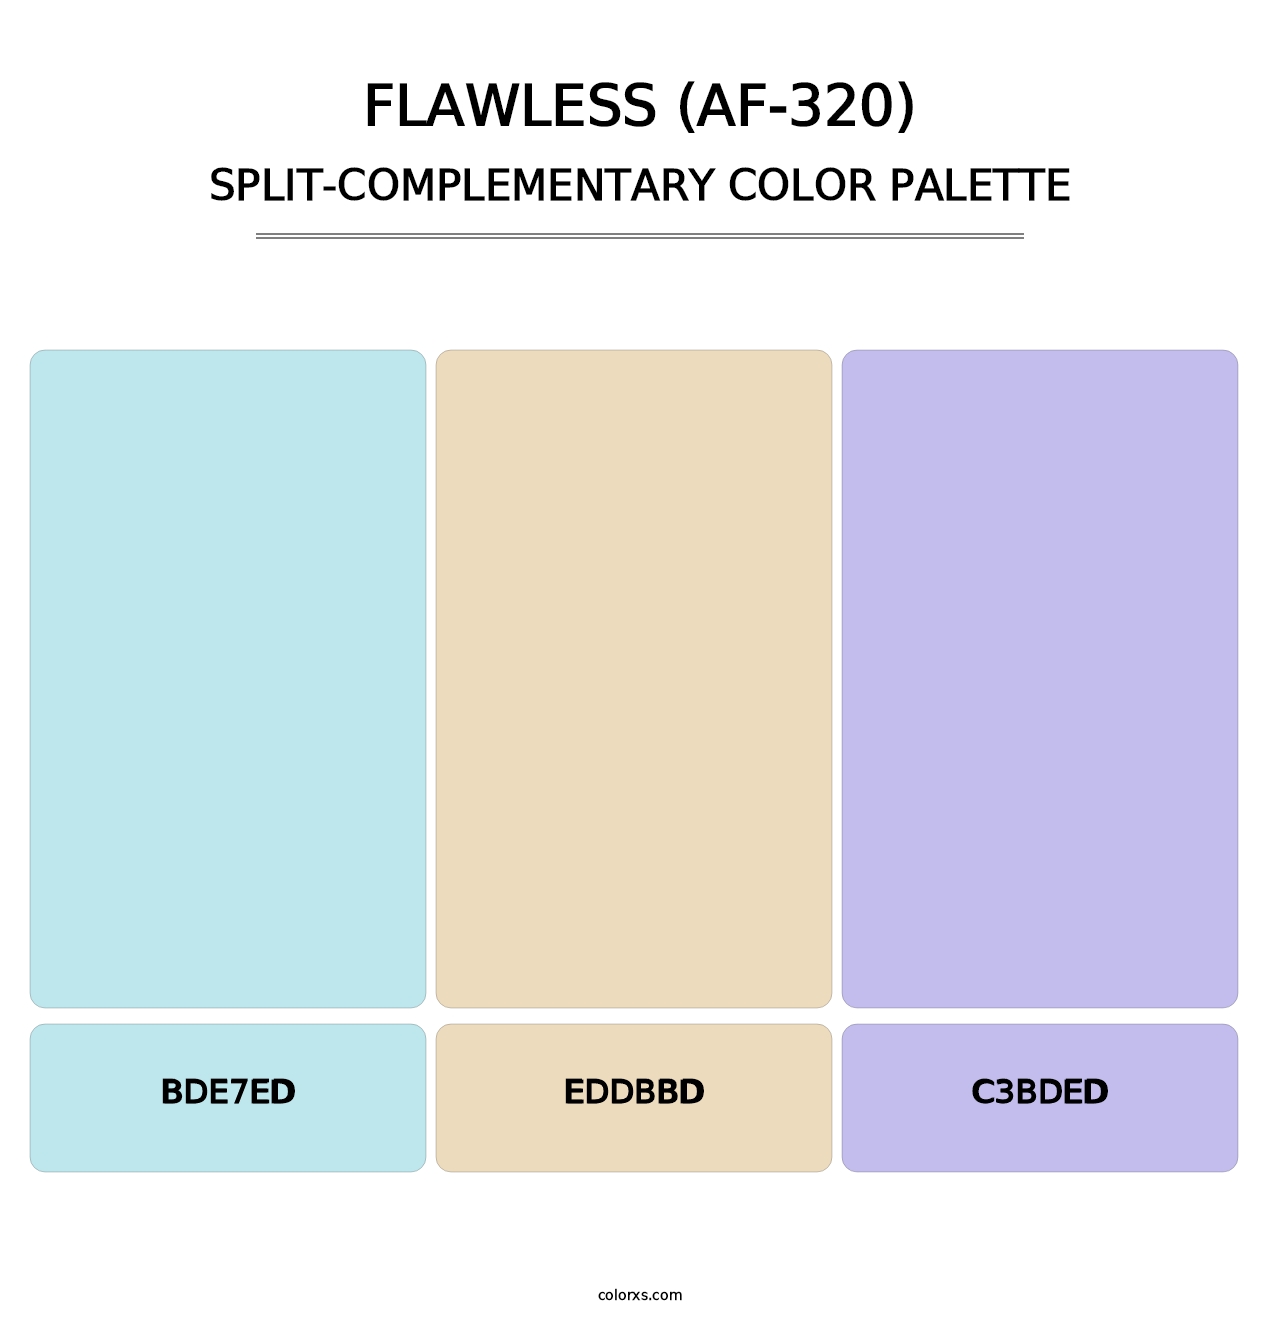 Flawless (AF-320) - Split-Complementary Color Palette